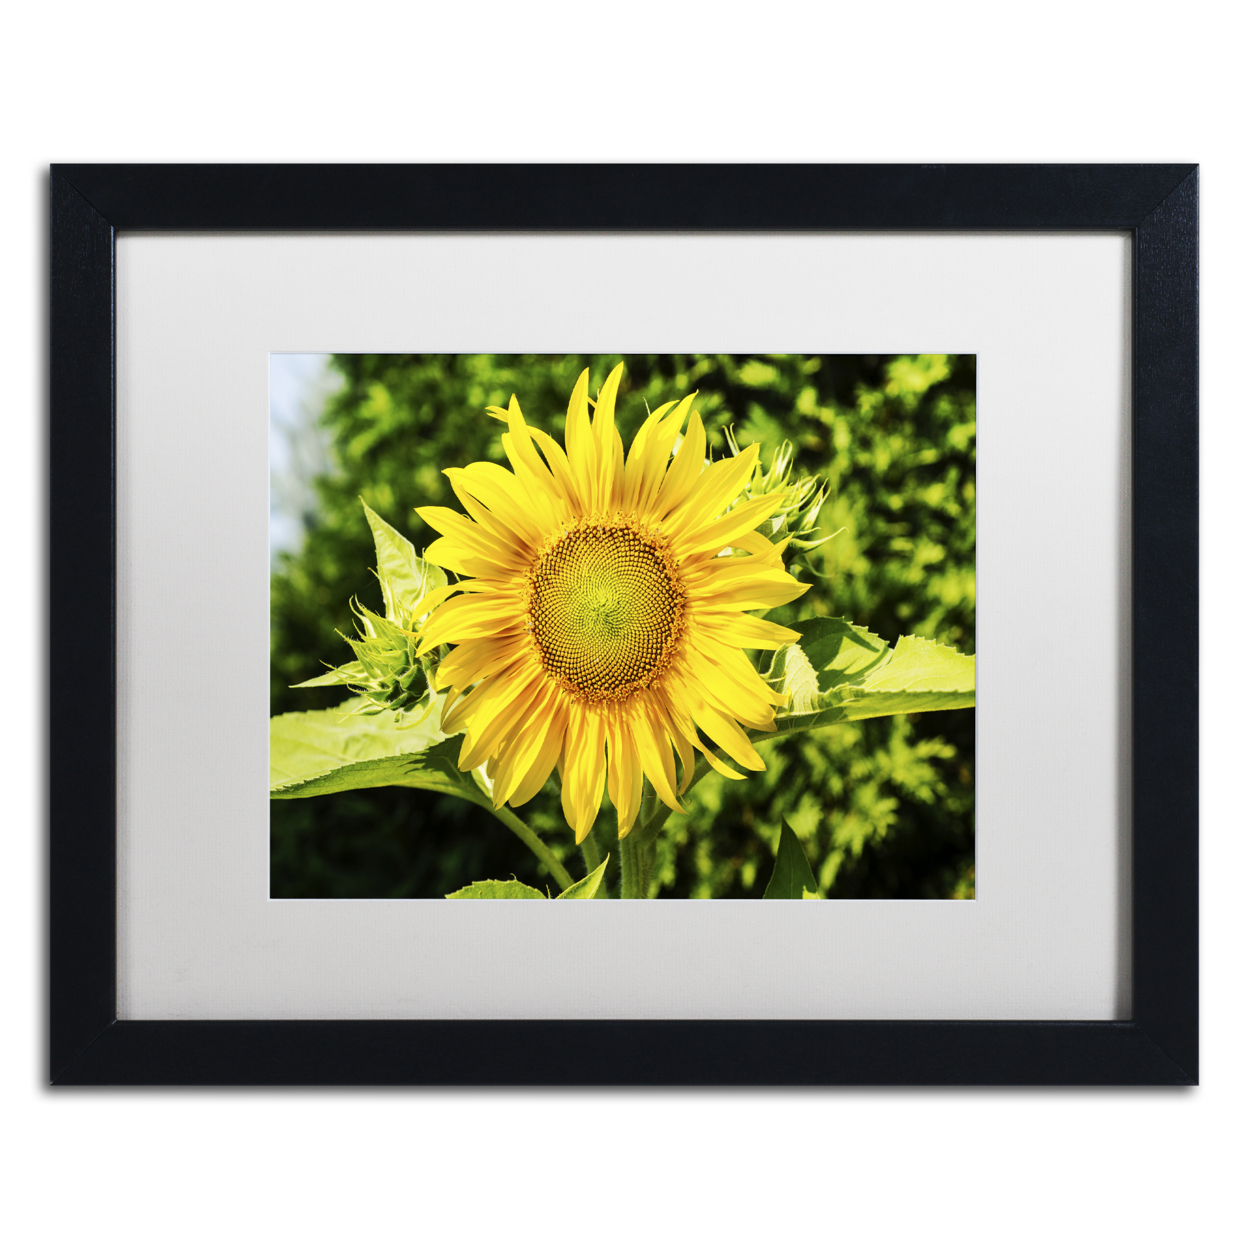 Kurt Shaffer 'Just A Sunflower' Black Wooden Framed Art 18 X 22 Inches